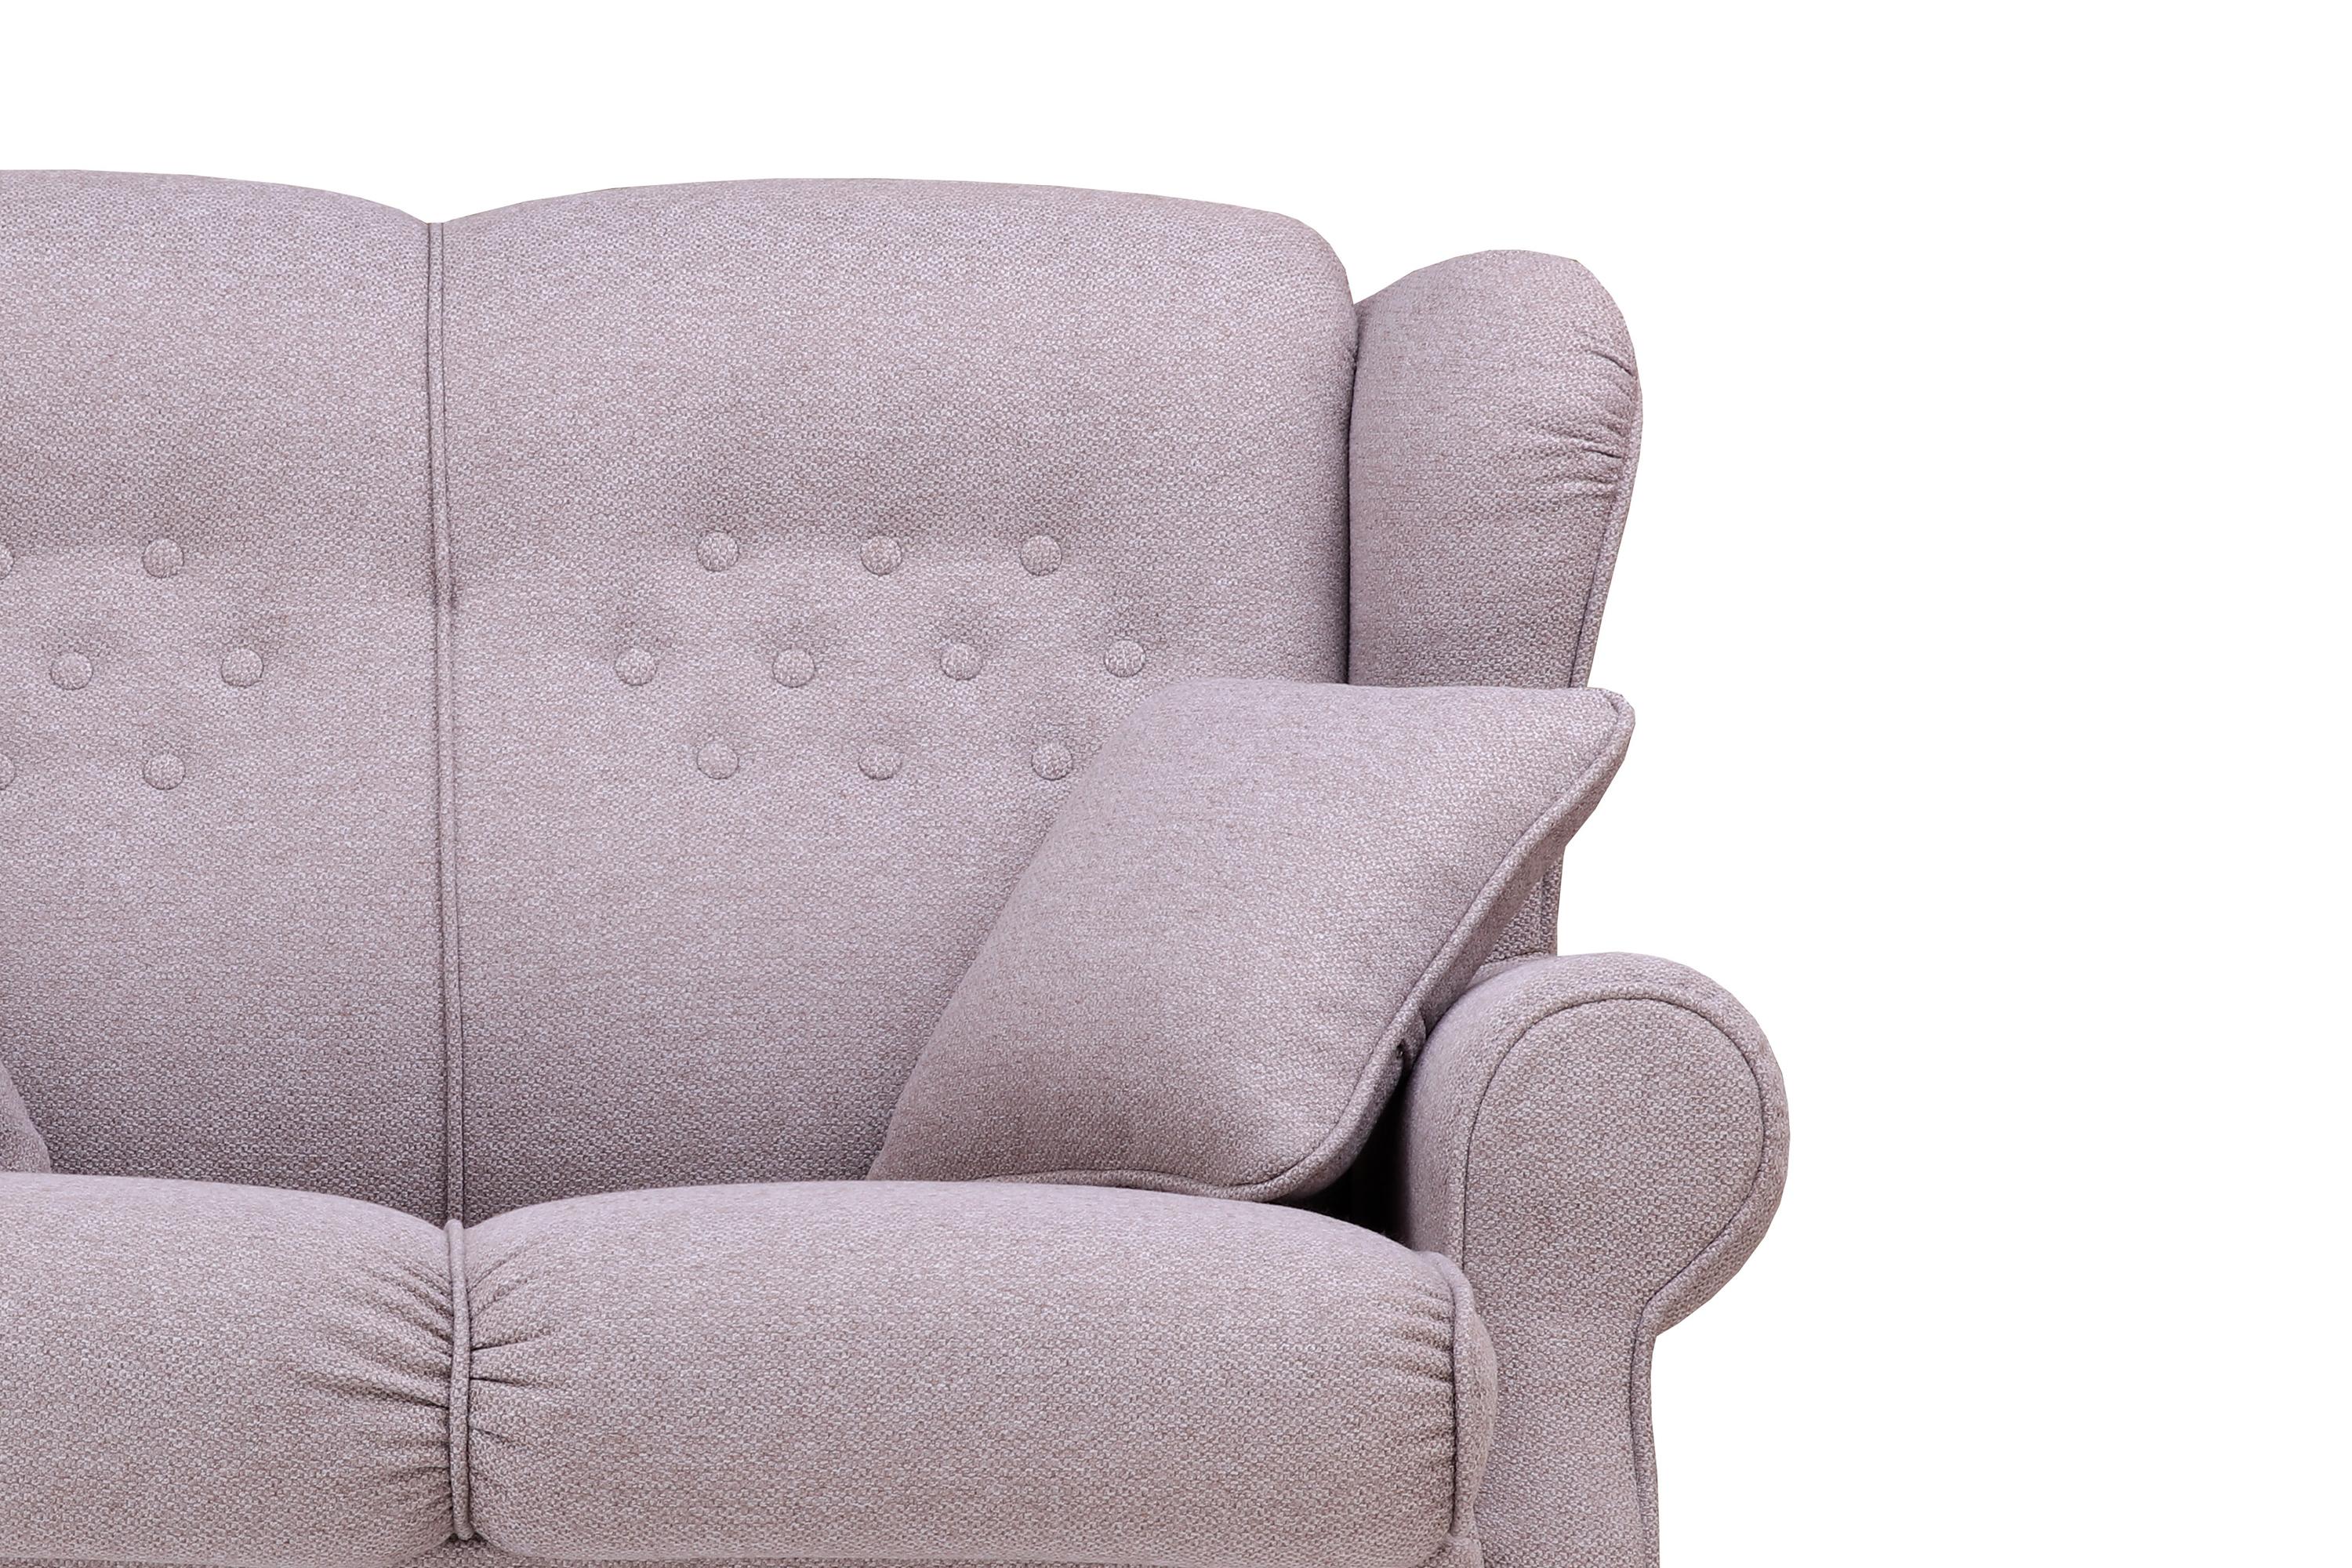 Фото №3 Ланкастер двухместный диван-кровать рогожка Аполло мокка